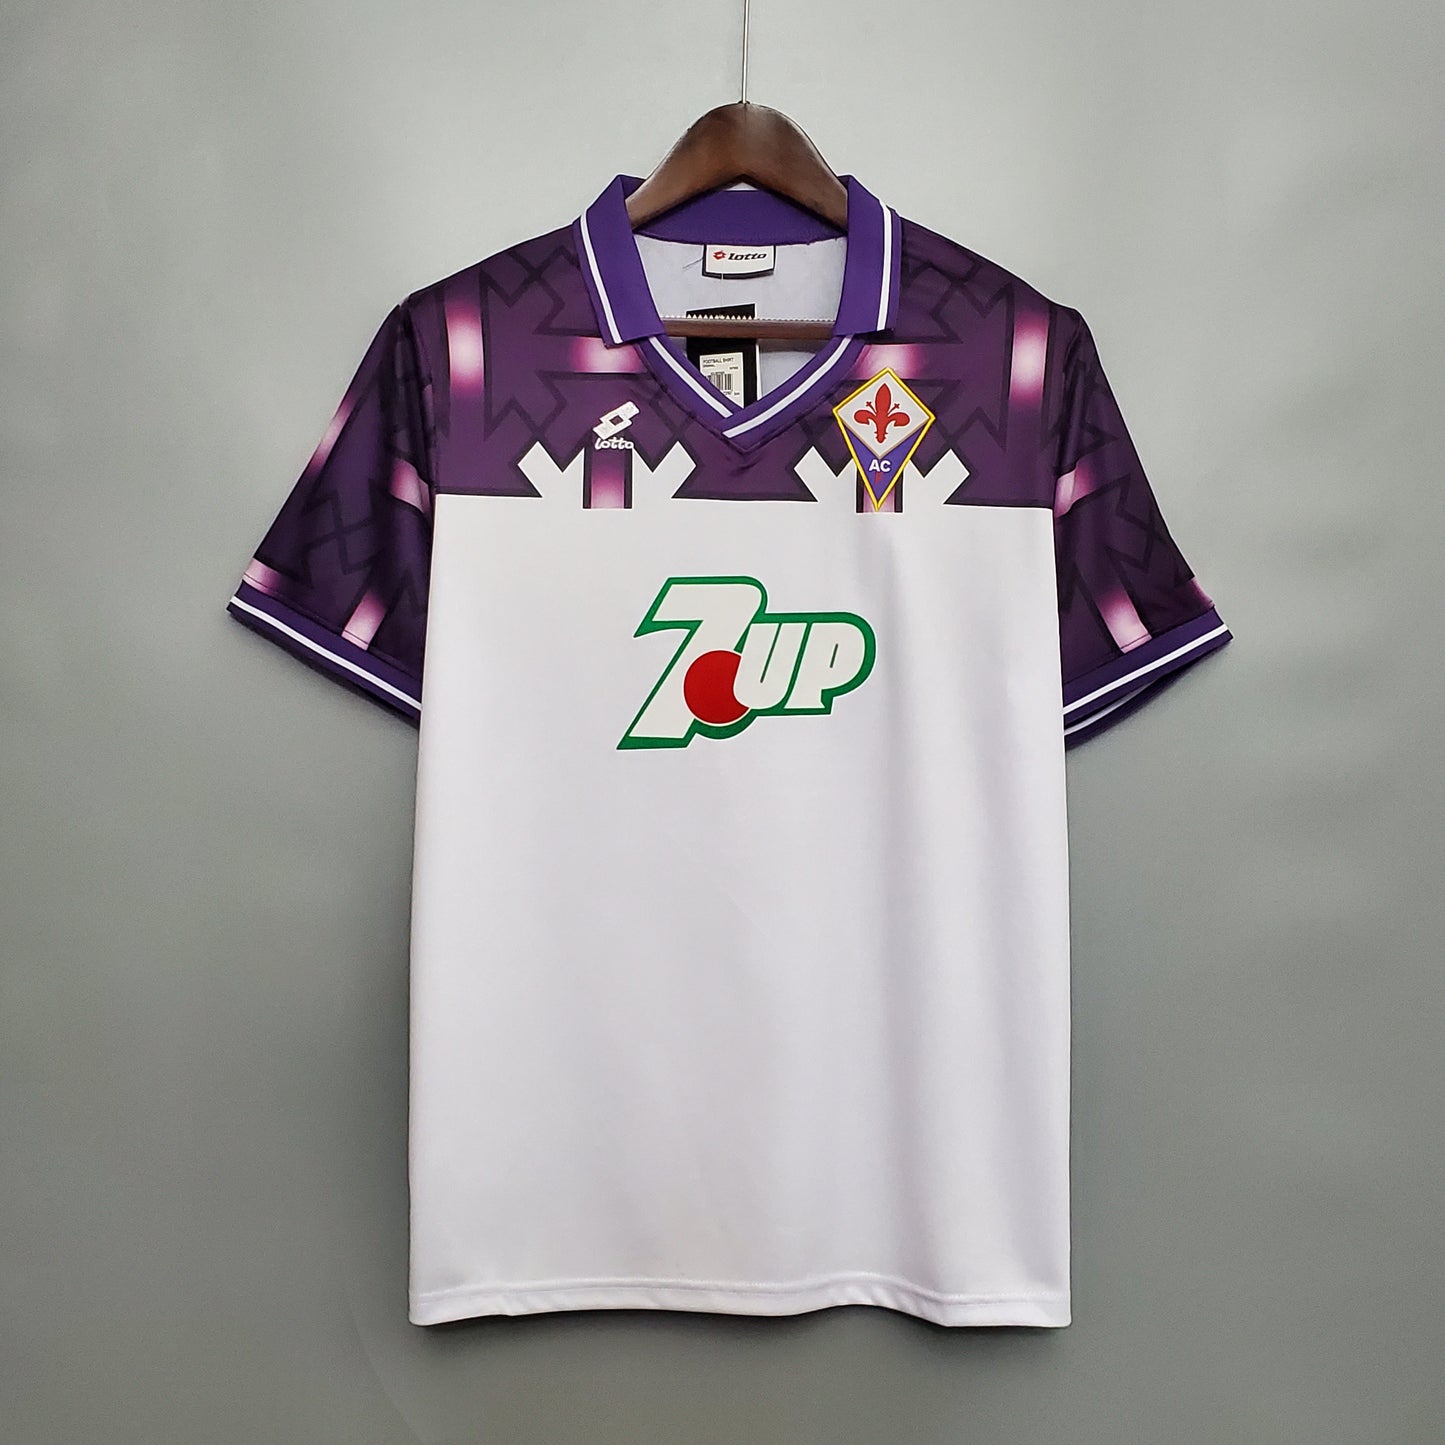 Fiorentina 1992/93 Away Jersey